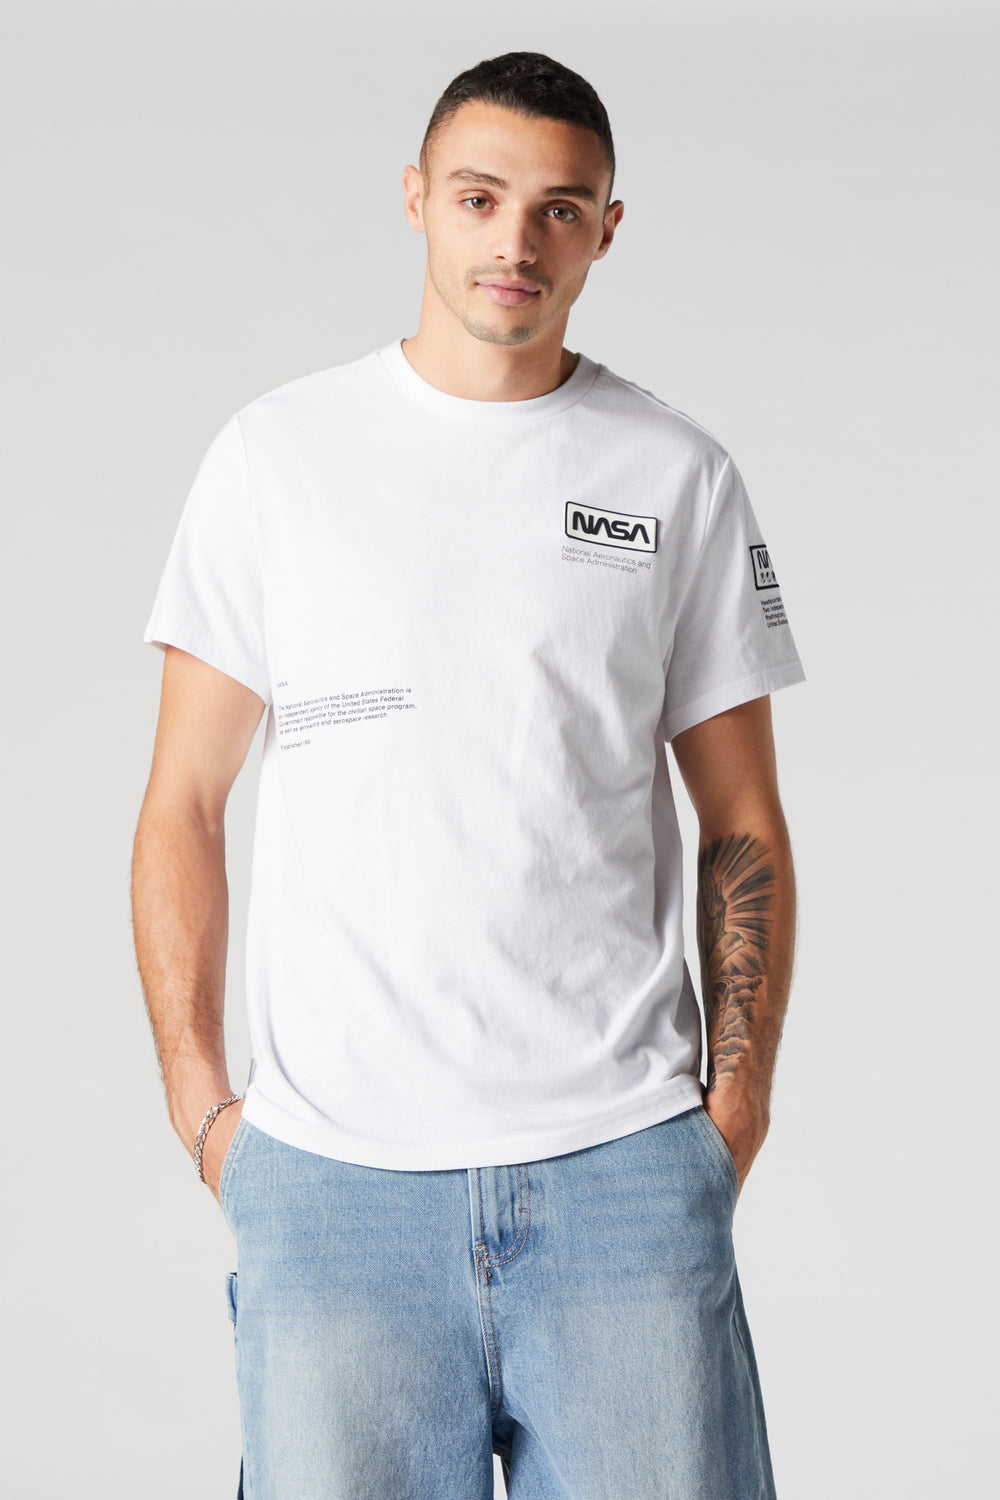 NASA Graphic T-Shirt NASA Graphic T-Shirt 5